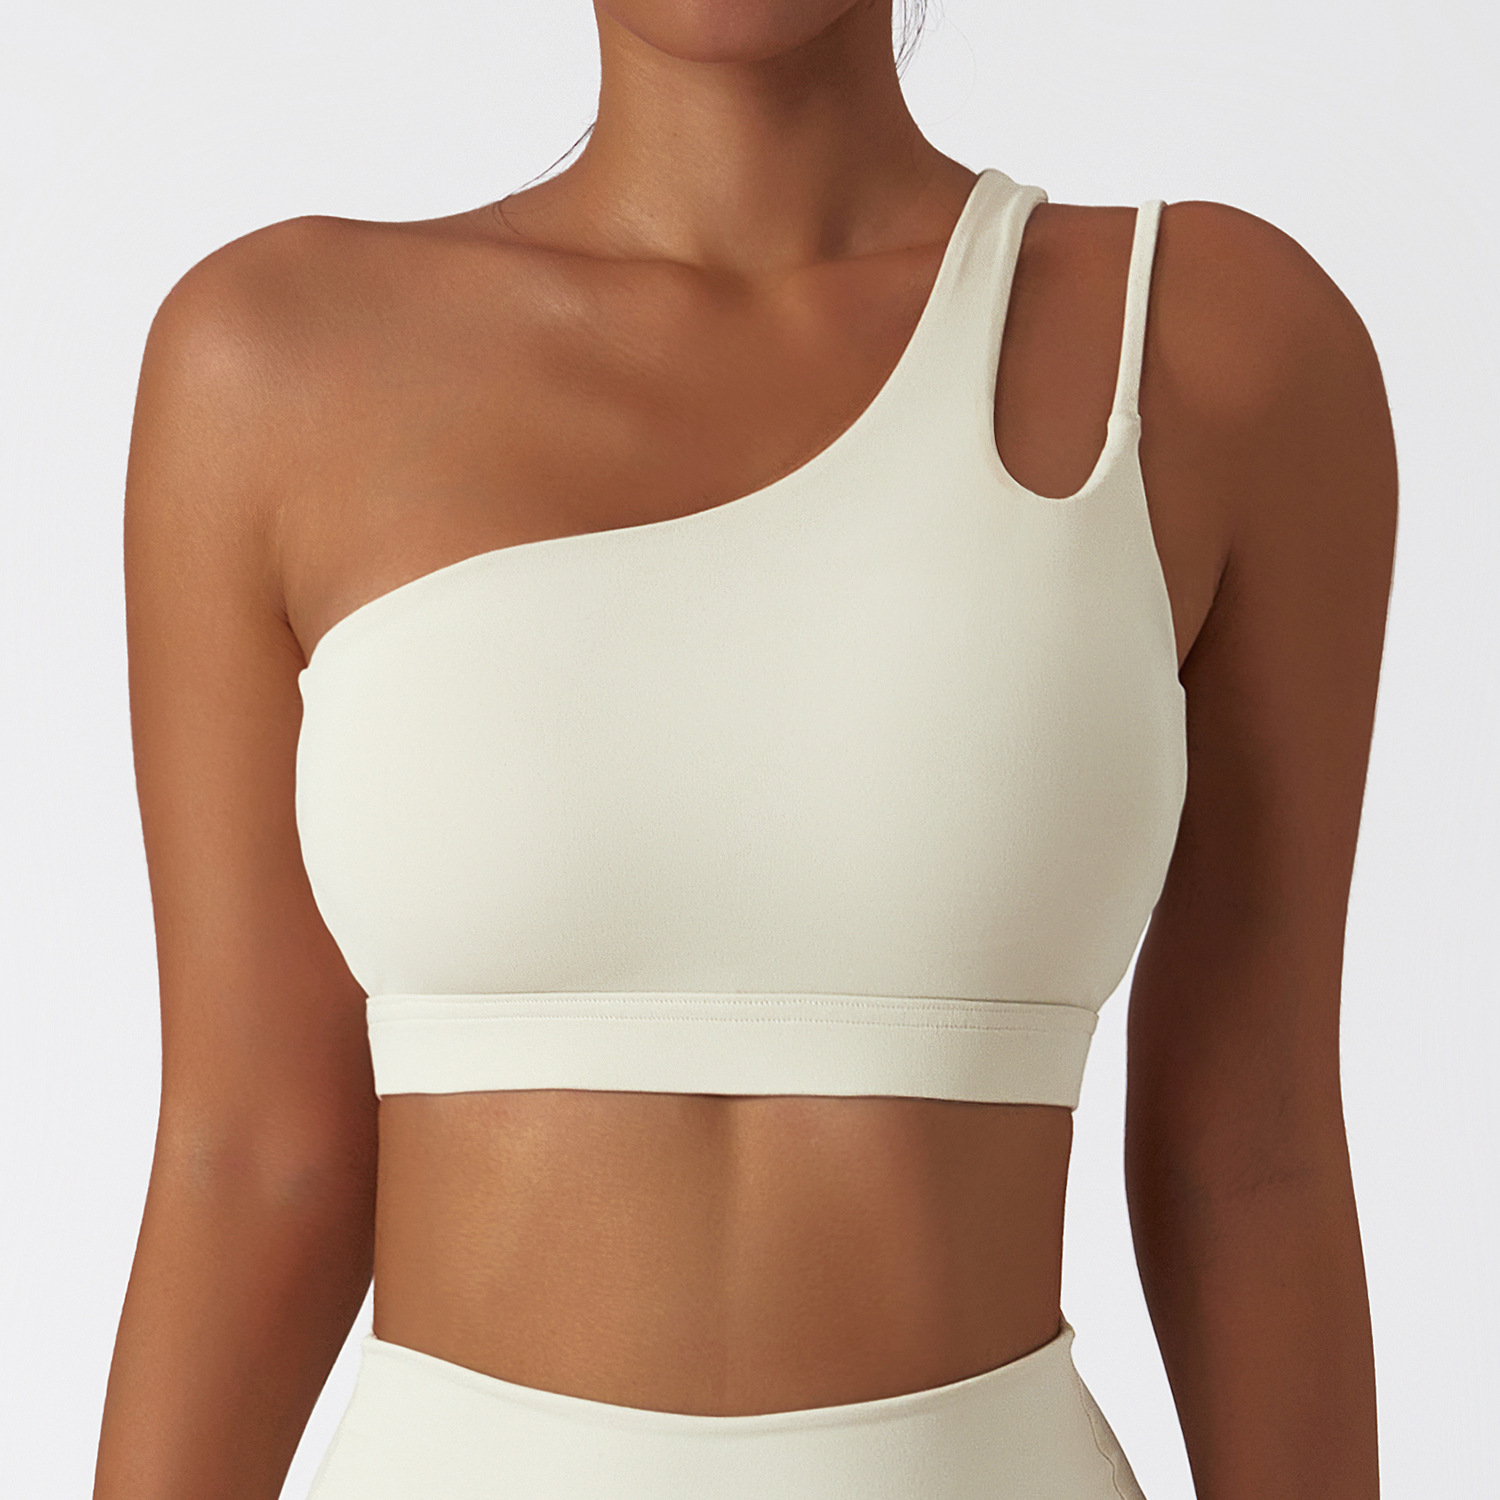 Oblique One-Shoulder Shockproof Yoga Bra Cloud Sense Beauty Back Exercise Underwear Irregular Shoulder Strap Running Workout Vest Top